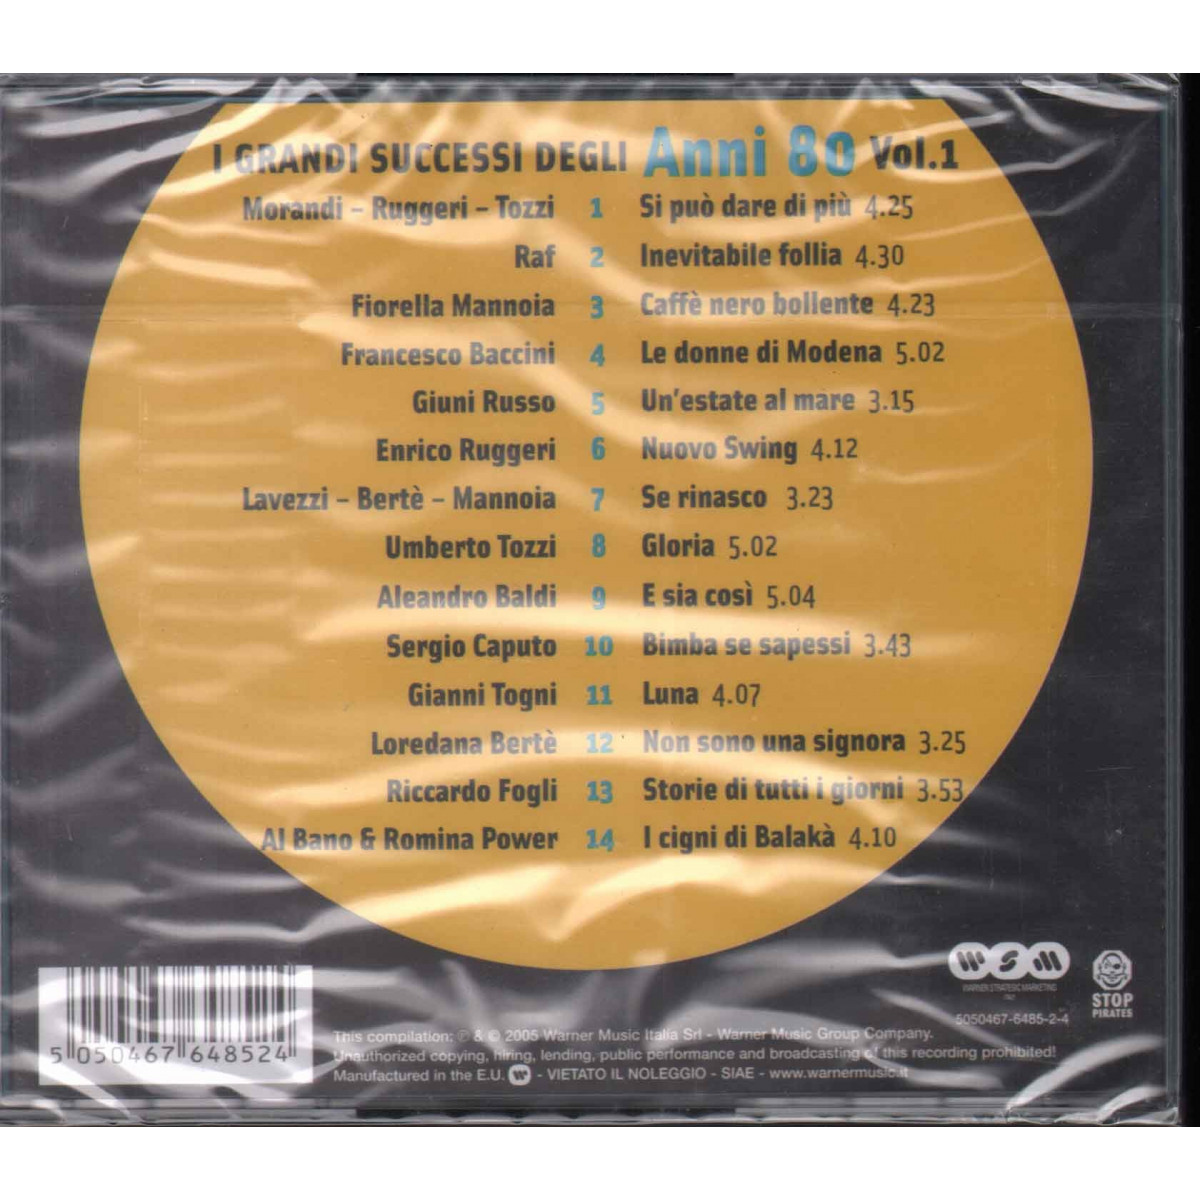 CD I Grandi Successi Degli Anni 80 Vol 1 Sigillato 5050467648524